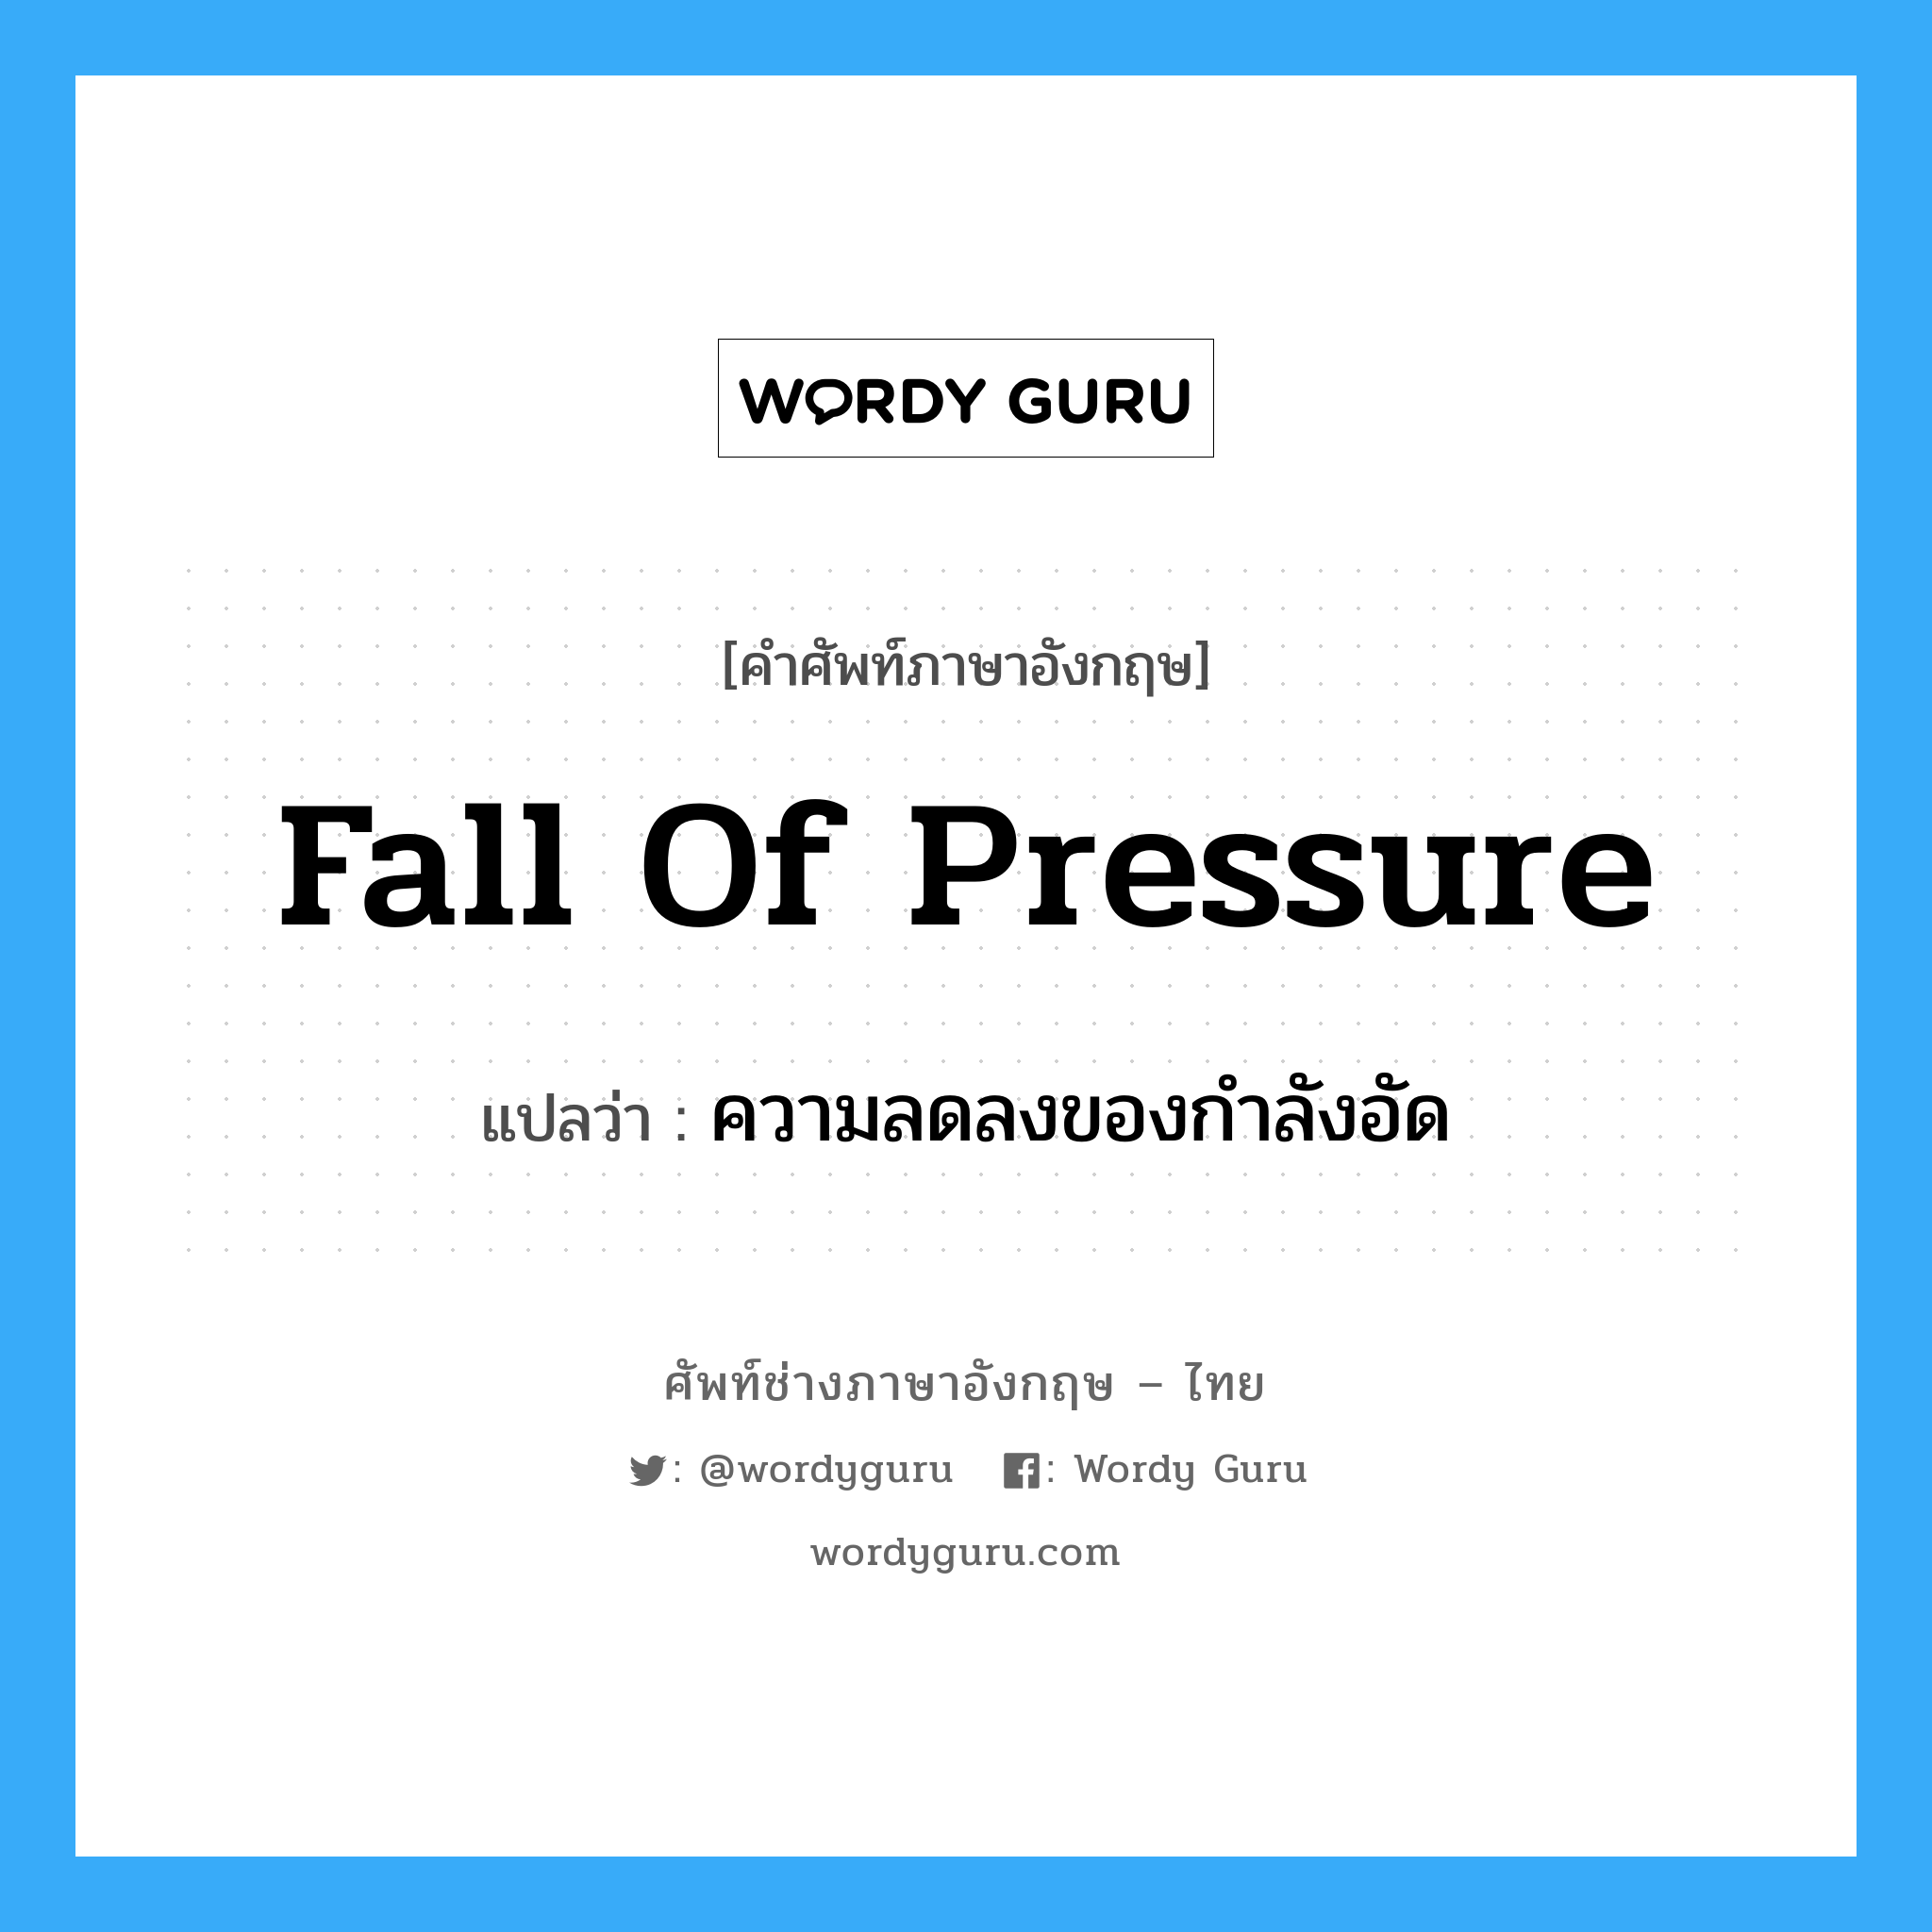 fall of pressure แปลว่า?, คำศัพท์ช่างภาษาอังกฤษ - ไทย fall of pressure คำศัพท์ภาษาอังกฤษ fall of pressure แปลว่า ความลดลงของกำลังอัด